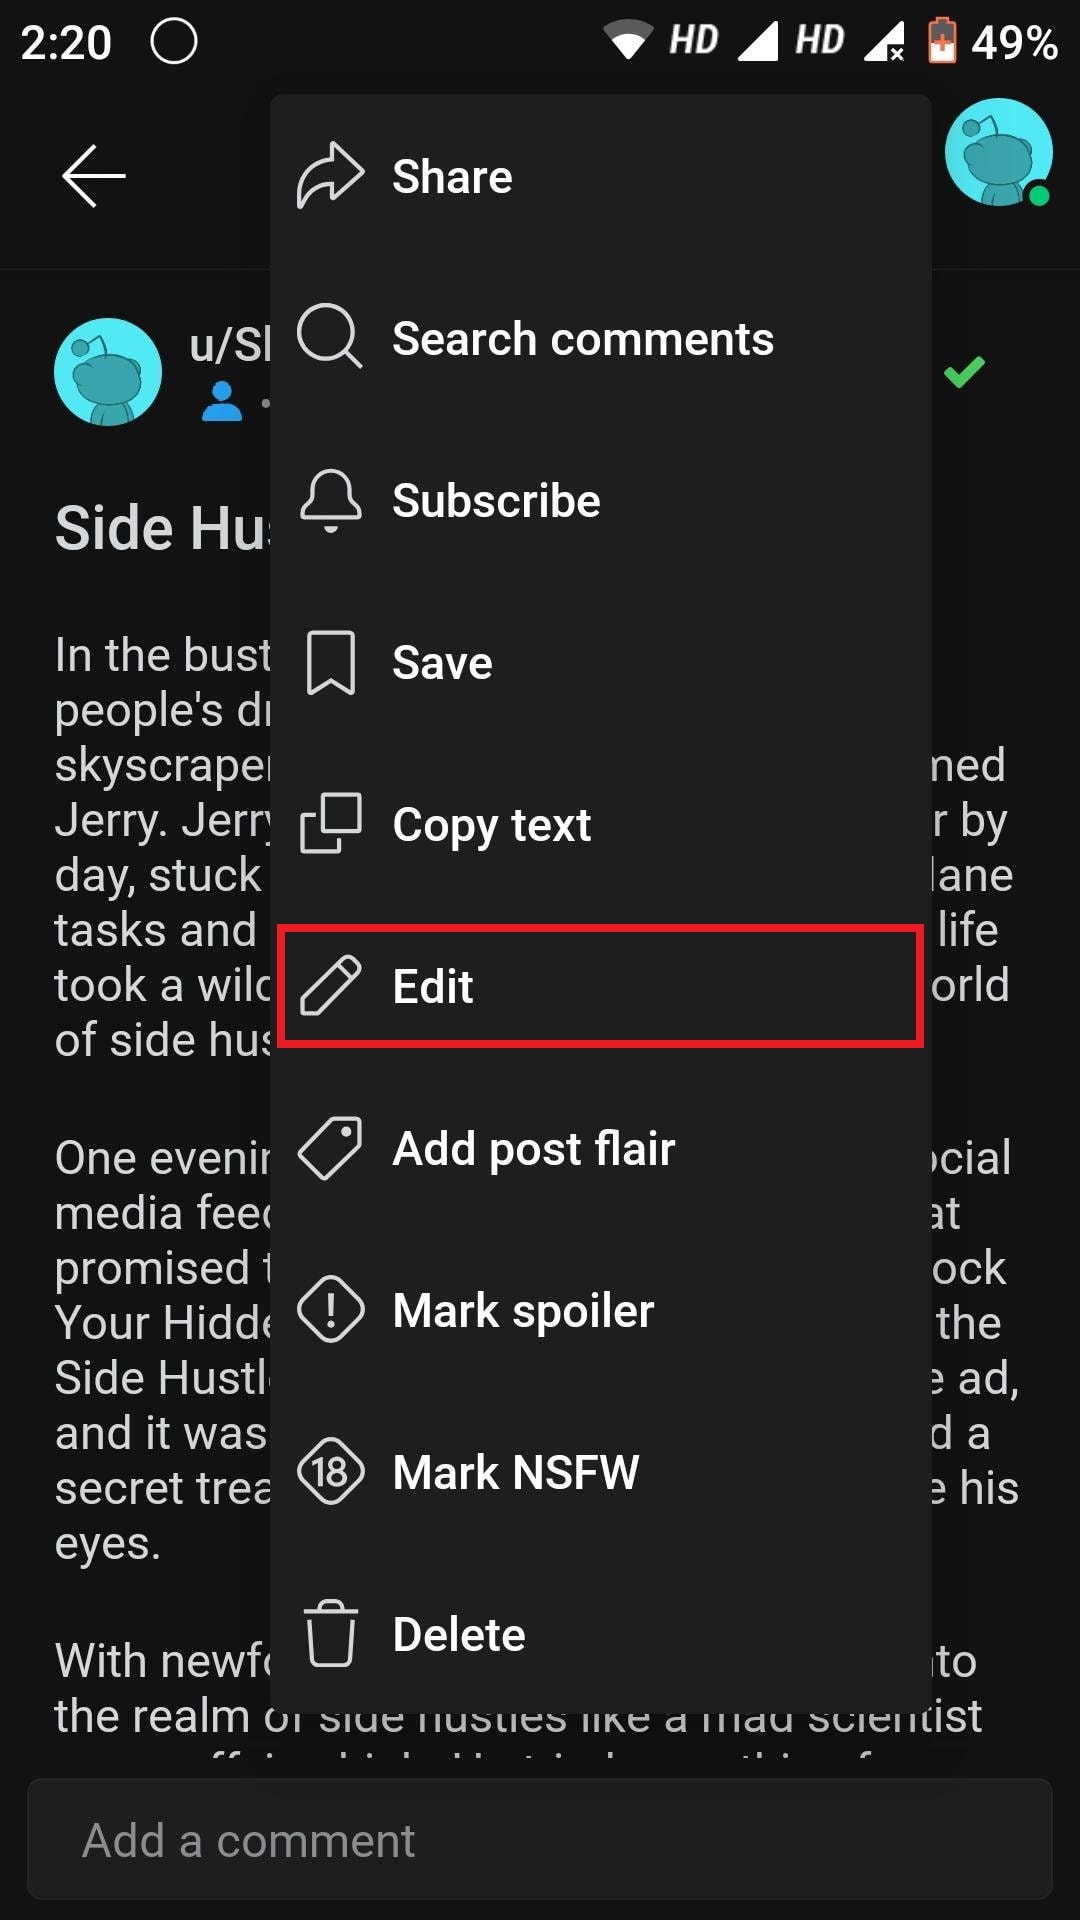 Select Edit.